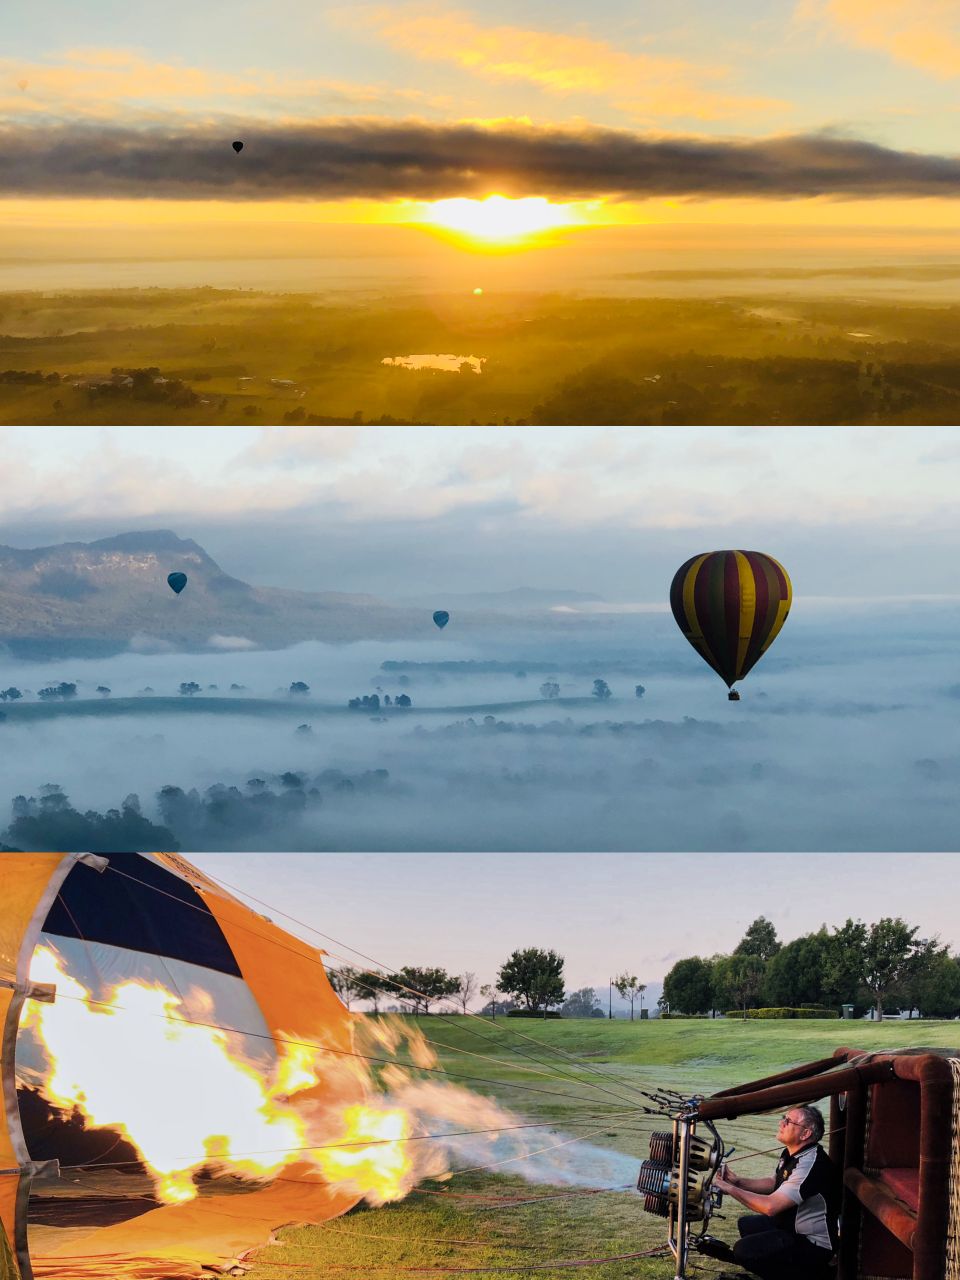 【 悉尼 旅游】 性价比极高的酒庄热气球  📍地点： 猎人谷 ，距离悉尼1小时车程。多家热气球可选，